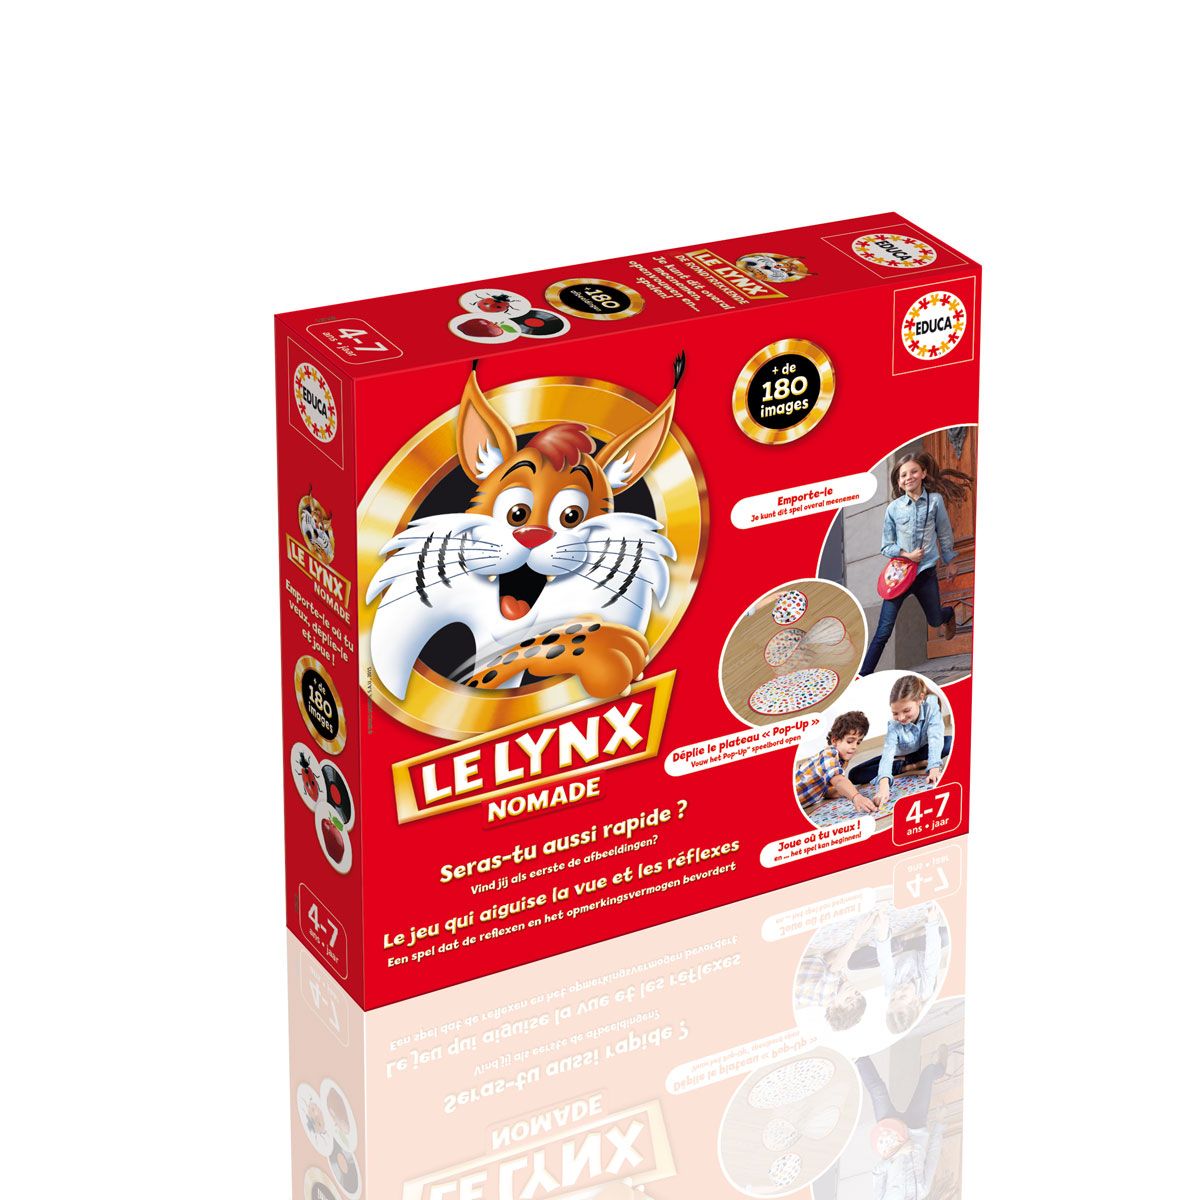 Lynx jeu d'association des images – Magasin de jouets et jeux